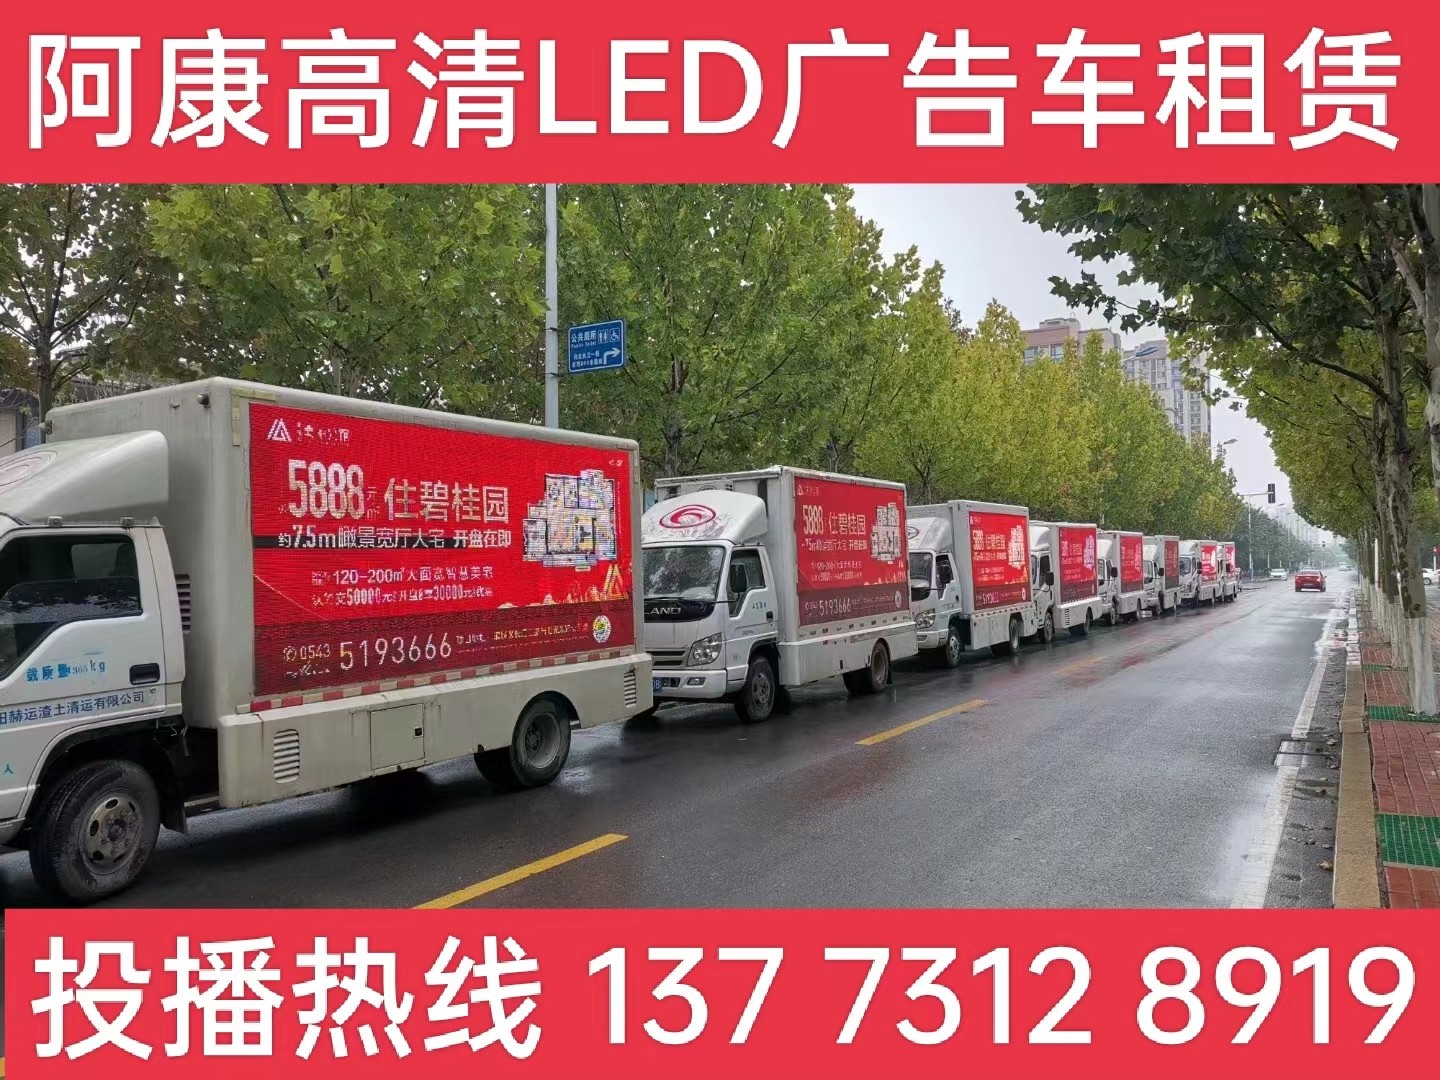 海安市宣传车租赁公司-楼盘LED广告车投放